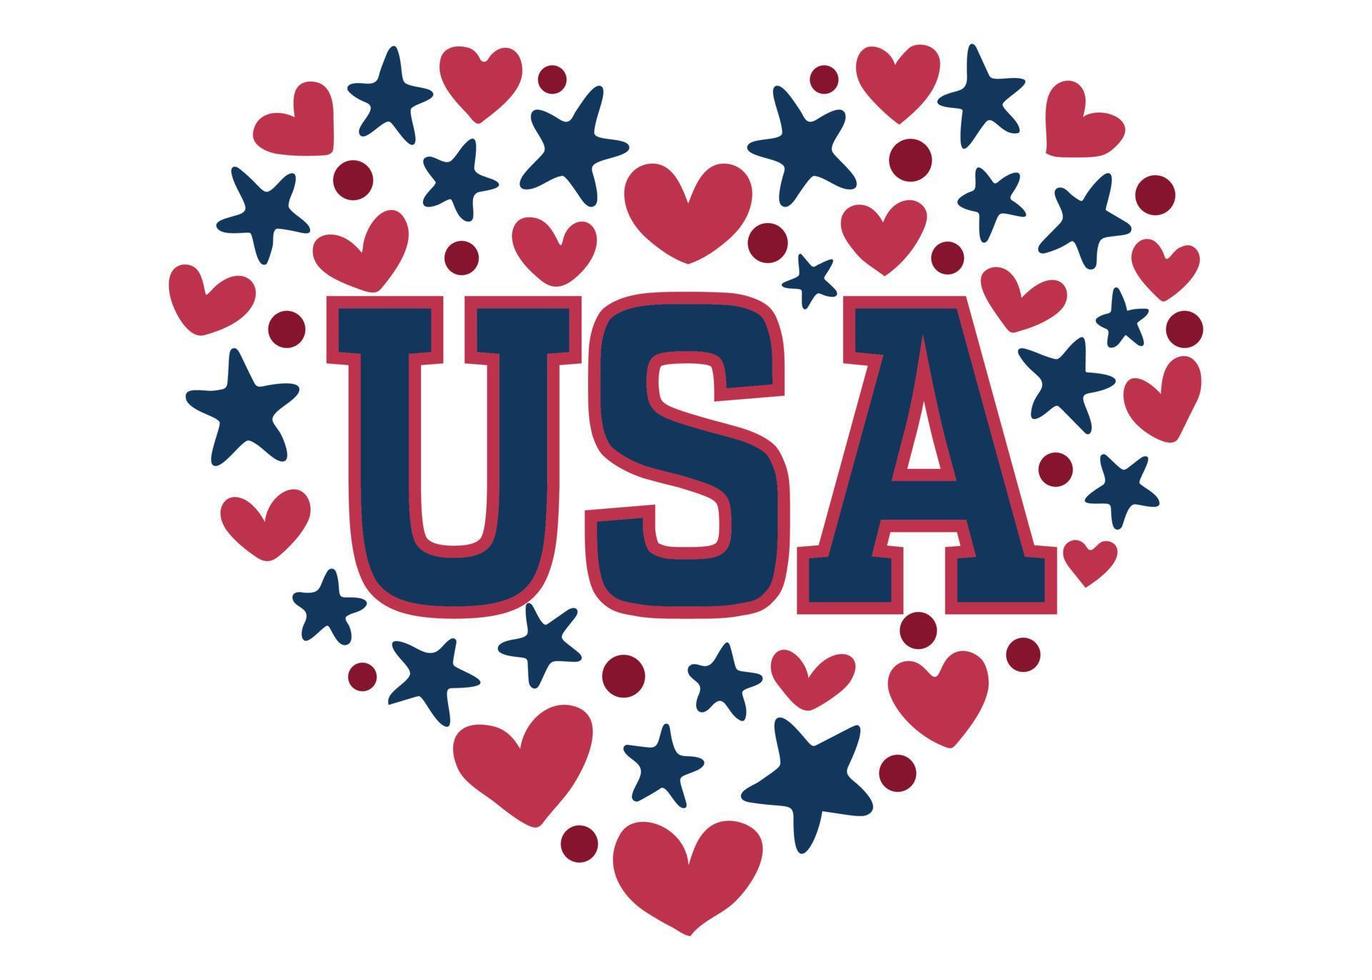 colores de la bandera de estados unidos en forma de corazón. símbolo nacional patriótico de los estados unidos de américa. ilustración vectorial dibujada a mano vector